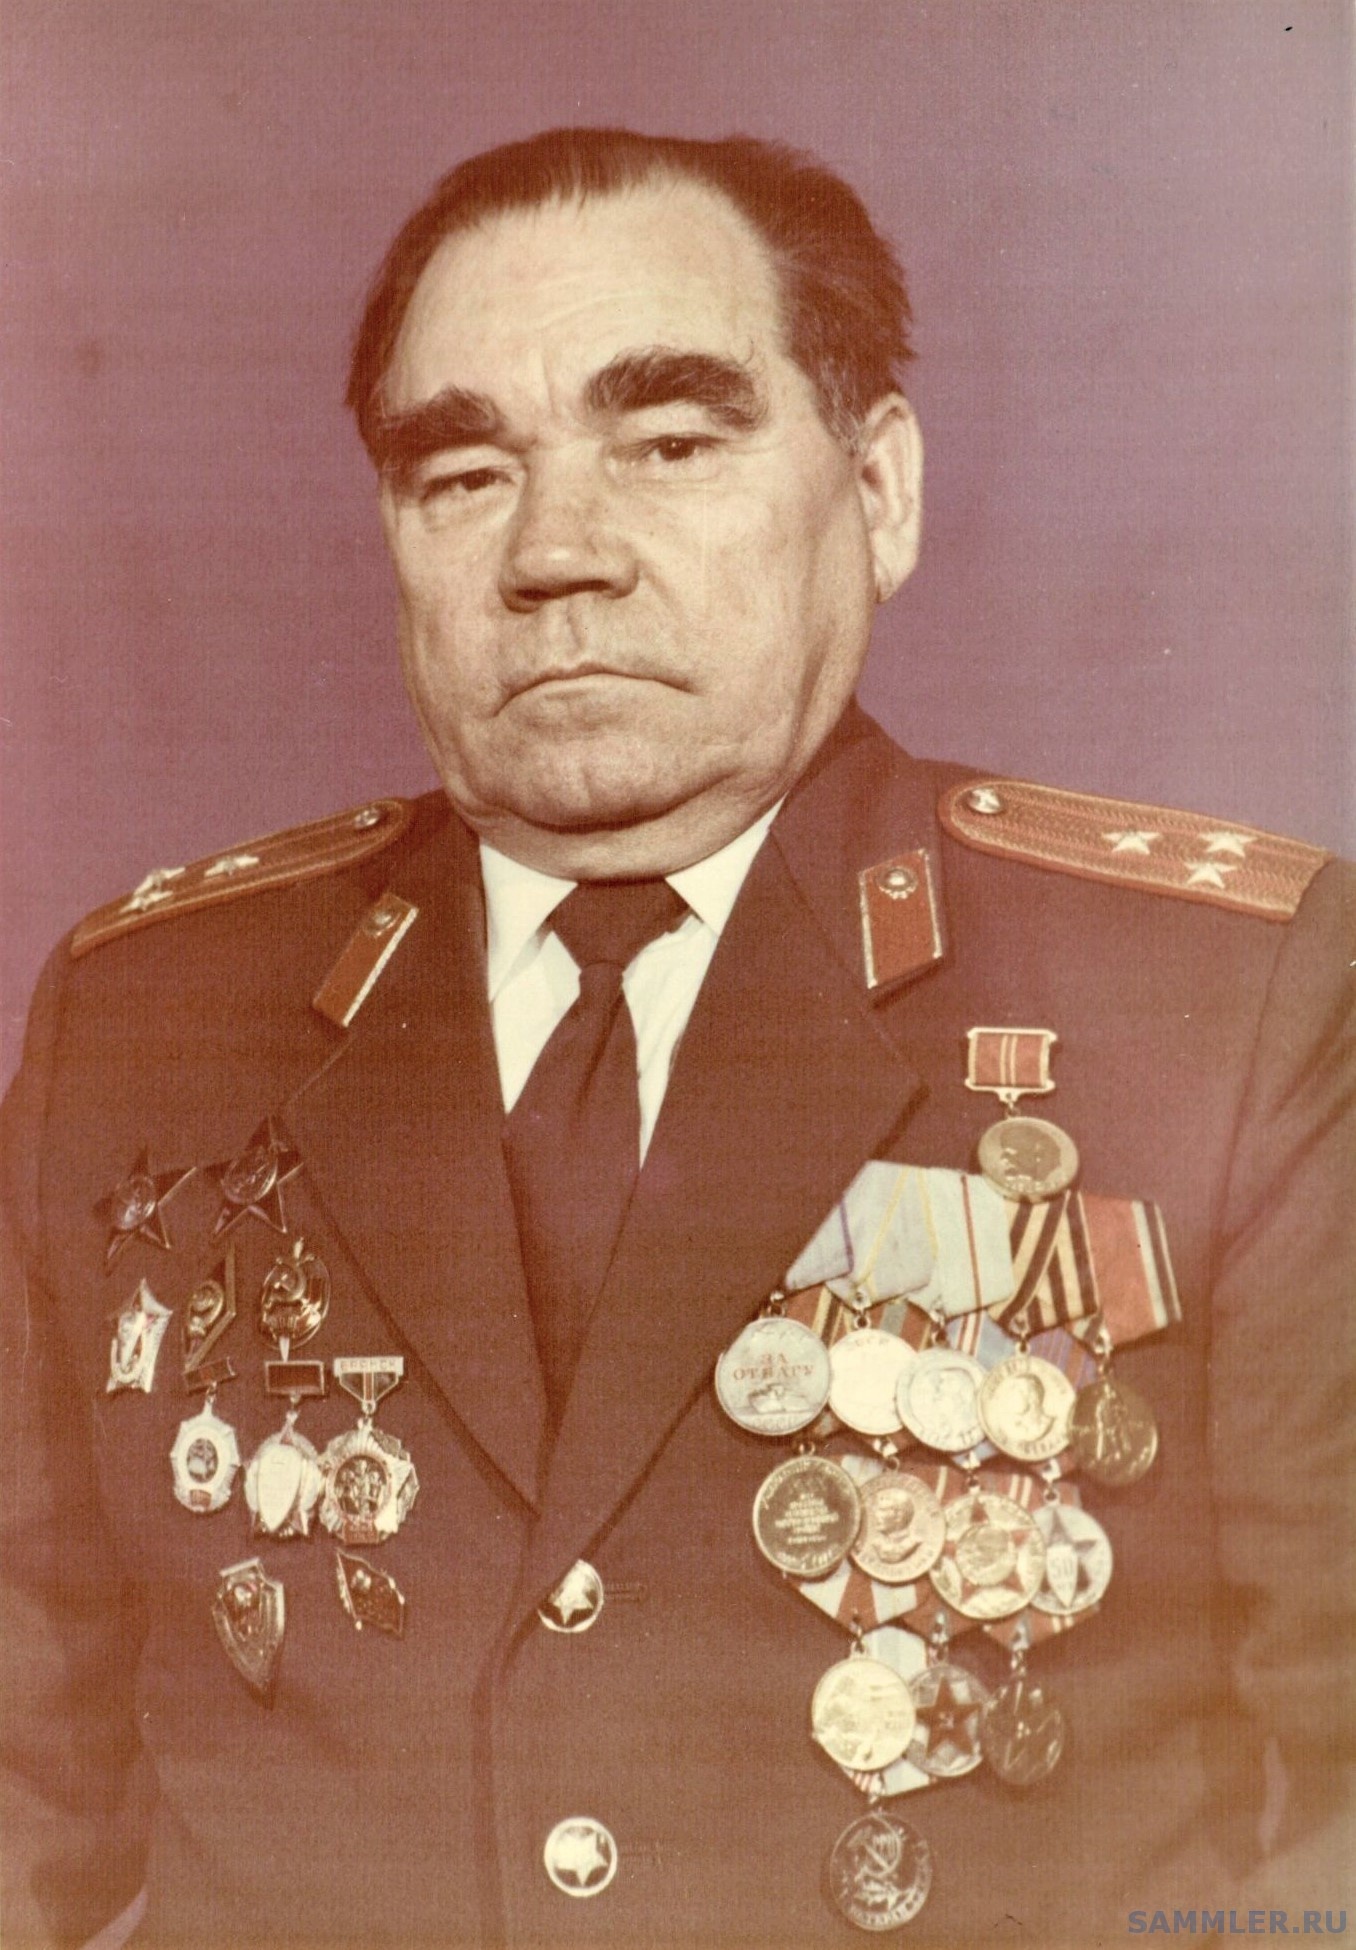 Ельчанинов Сергей Прокофьевич в форме полковника милиции.jpg